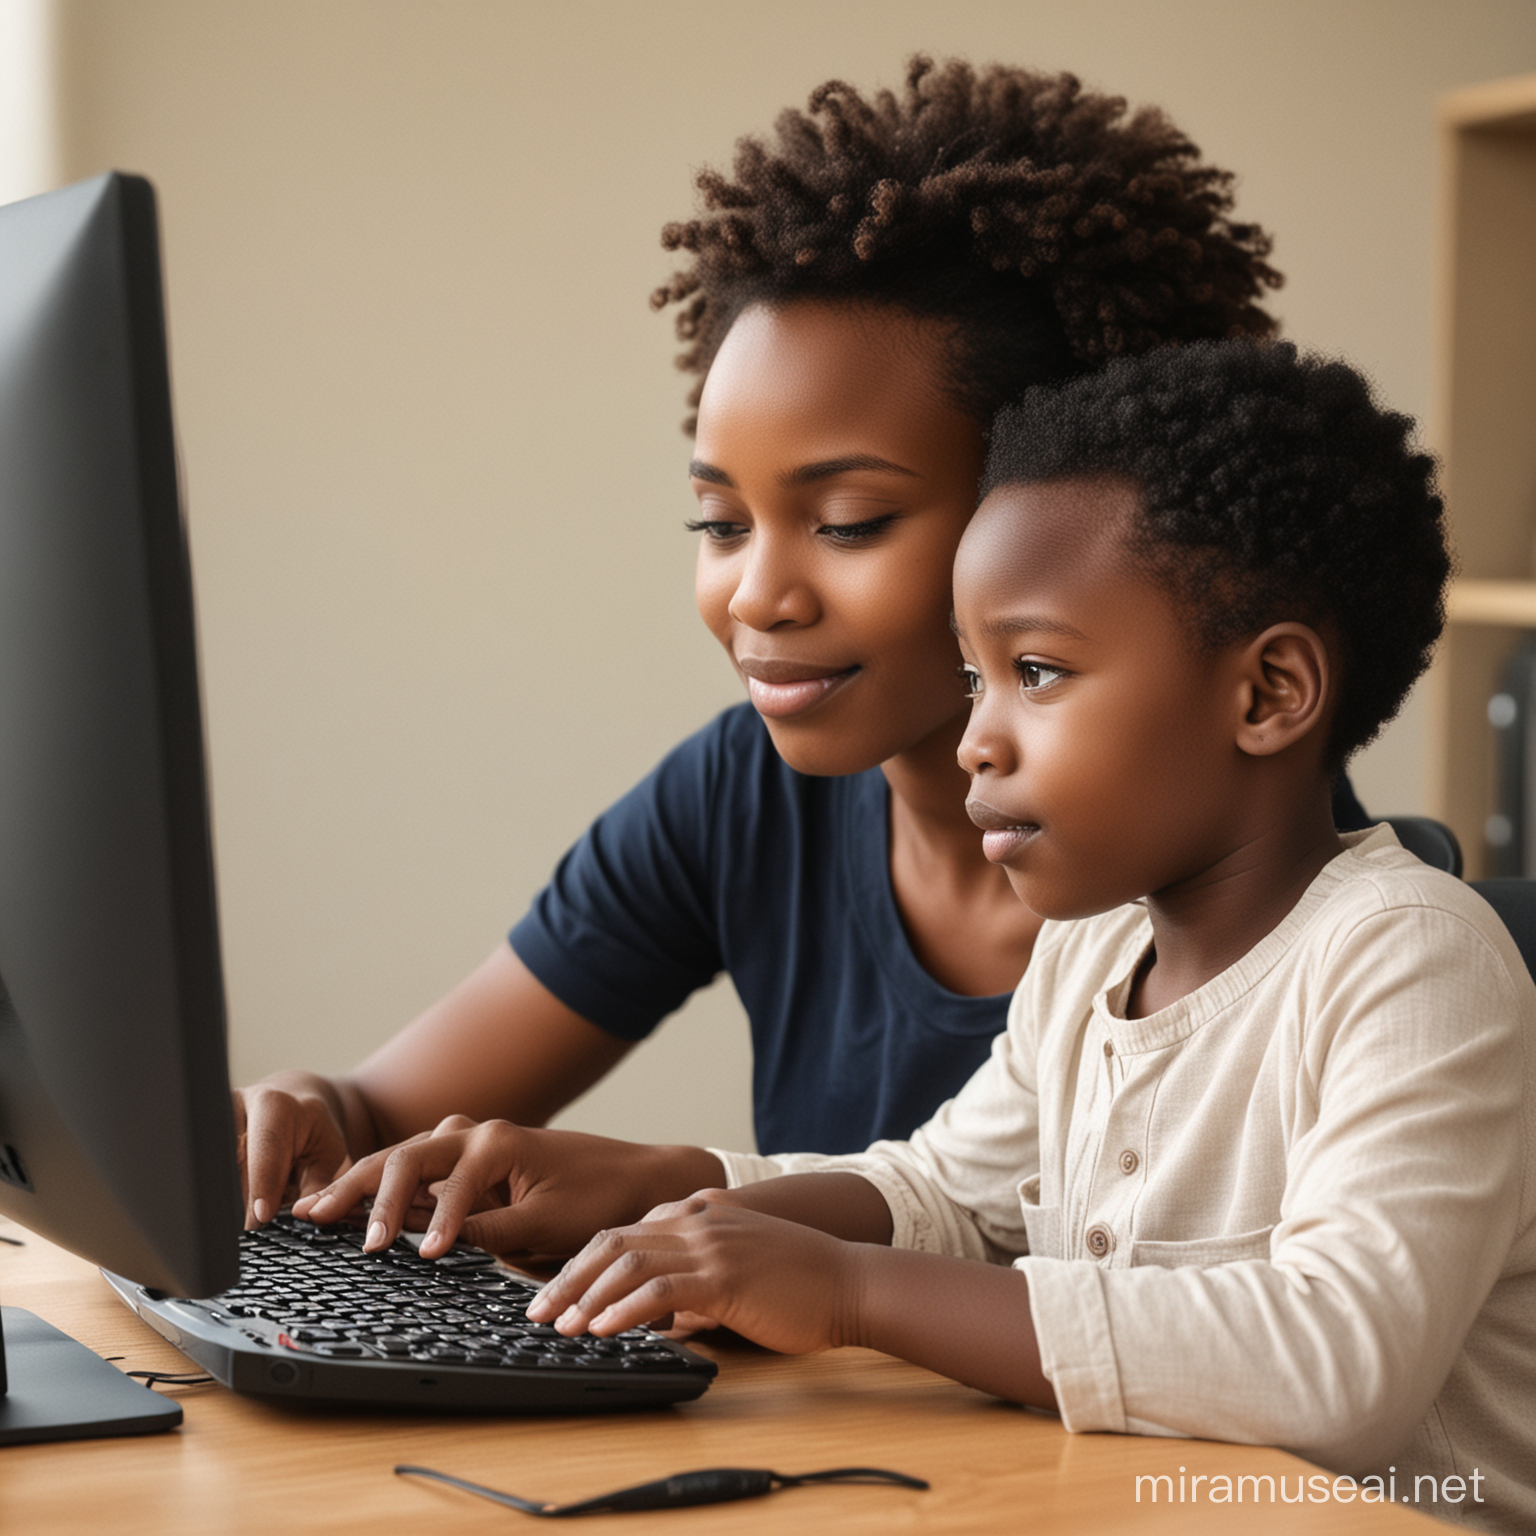 un enfant africain sur un ordinateur bureautique, assisté par sa maman